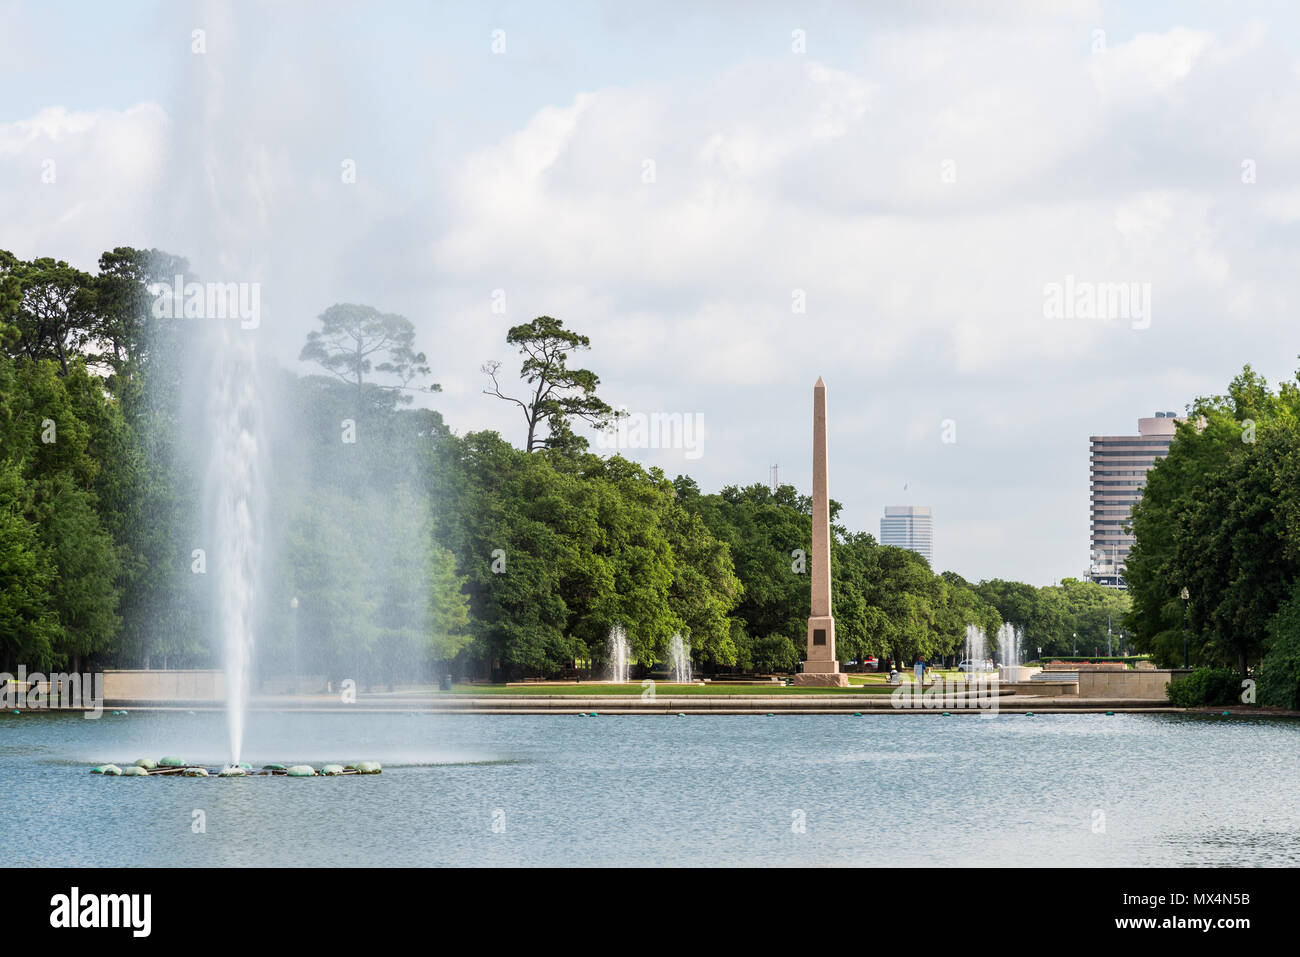 El Pioneer Memorial obelisco y fuente de agua en Hermann Park. Houston, Texas, EE.UU. Foto de stock